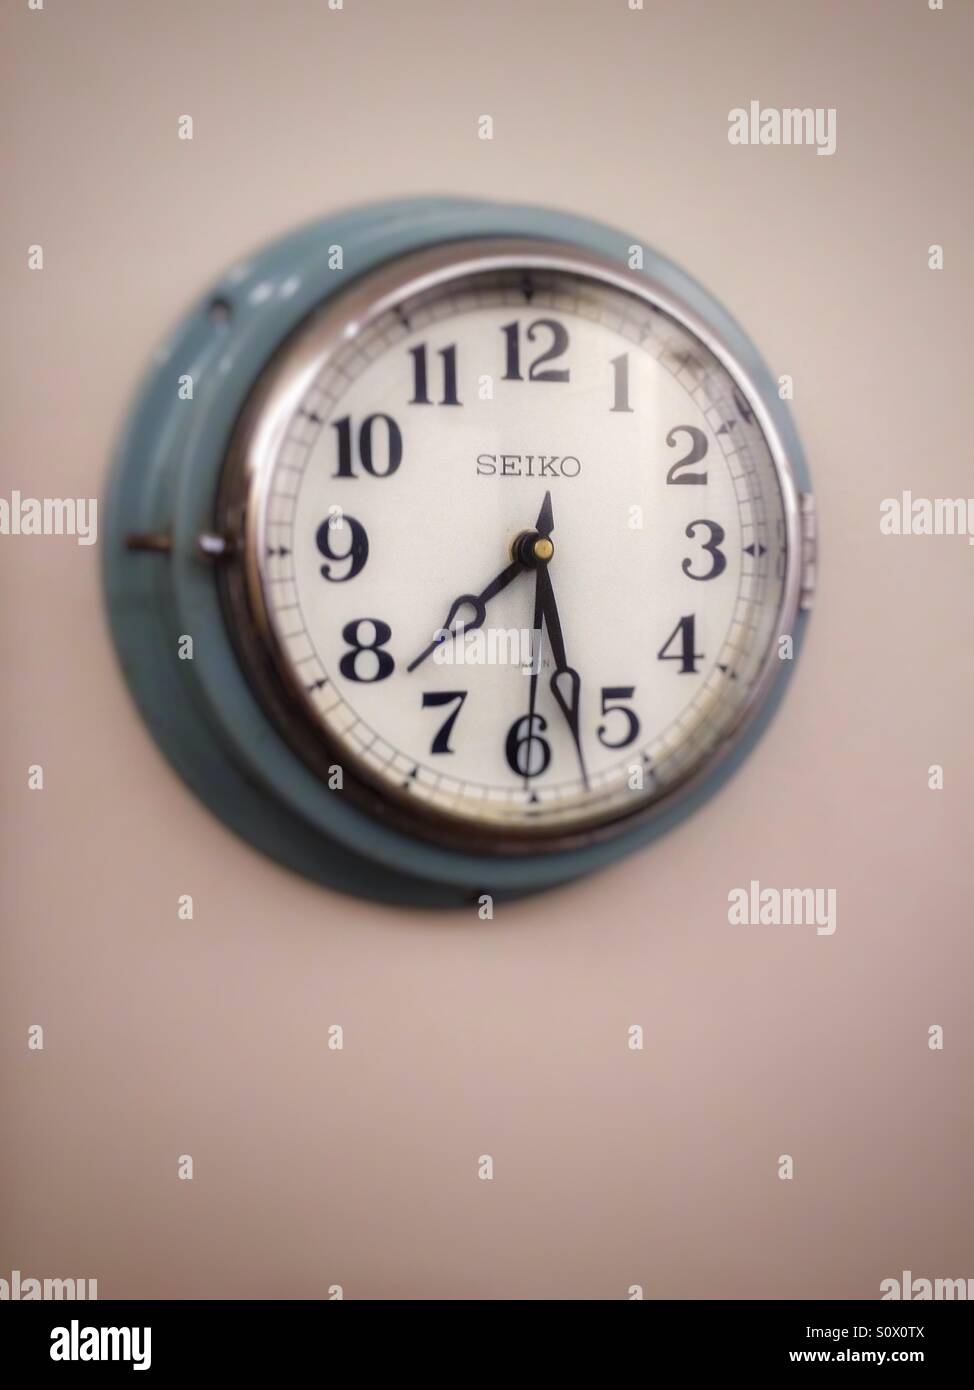 Vintage clock seiko Stock Photo - Alamy